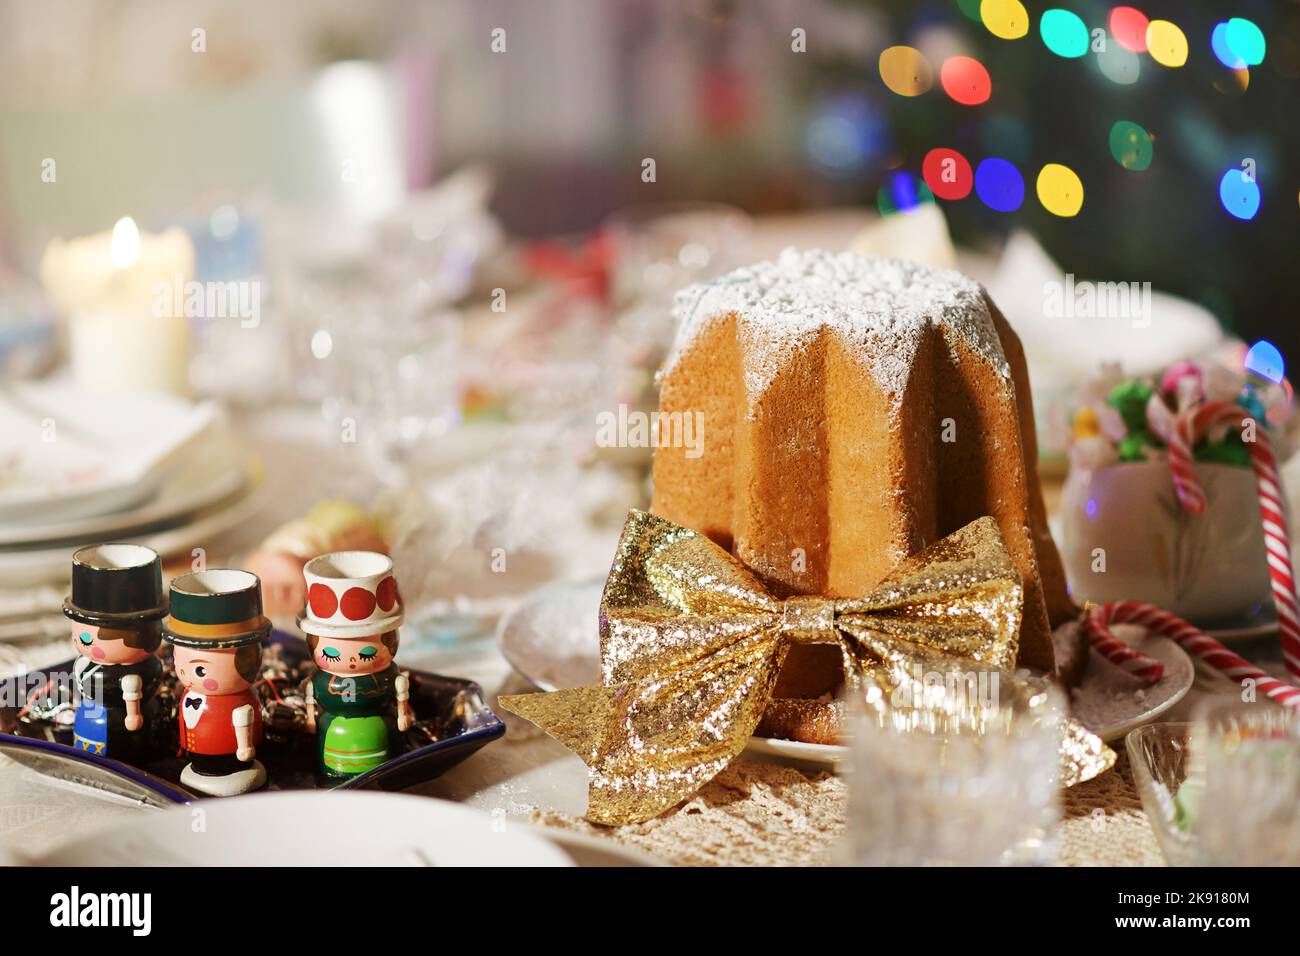 Pastel de Navidad de Pandoro italiano decorado con cinta dorada en una mesa con decoraciones navideñas festivas variadas para celebrar la temporada navideña Foto de stock